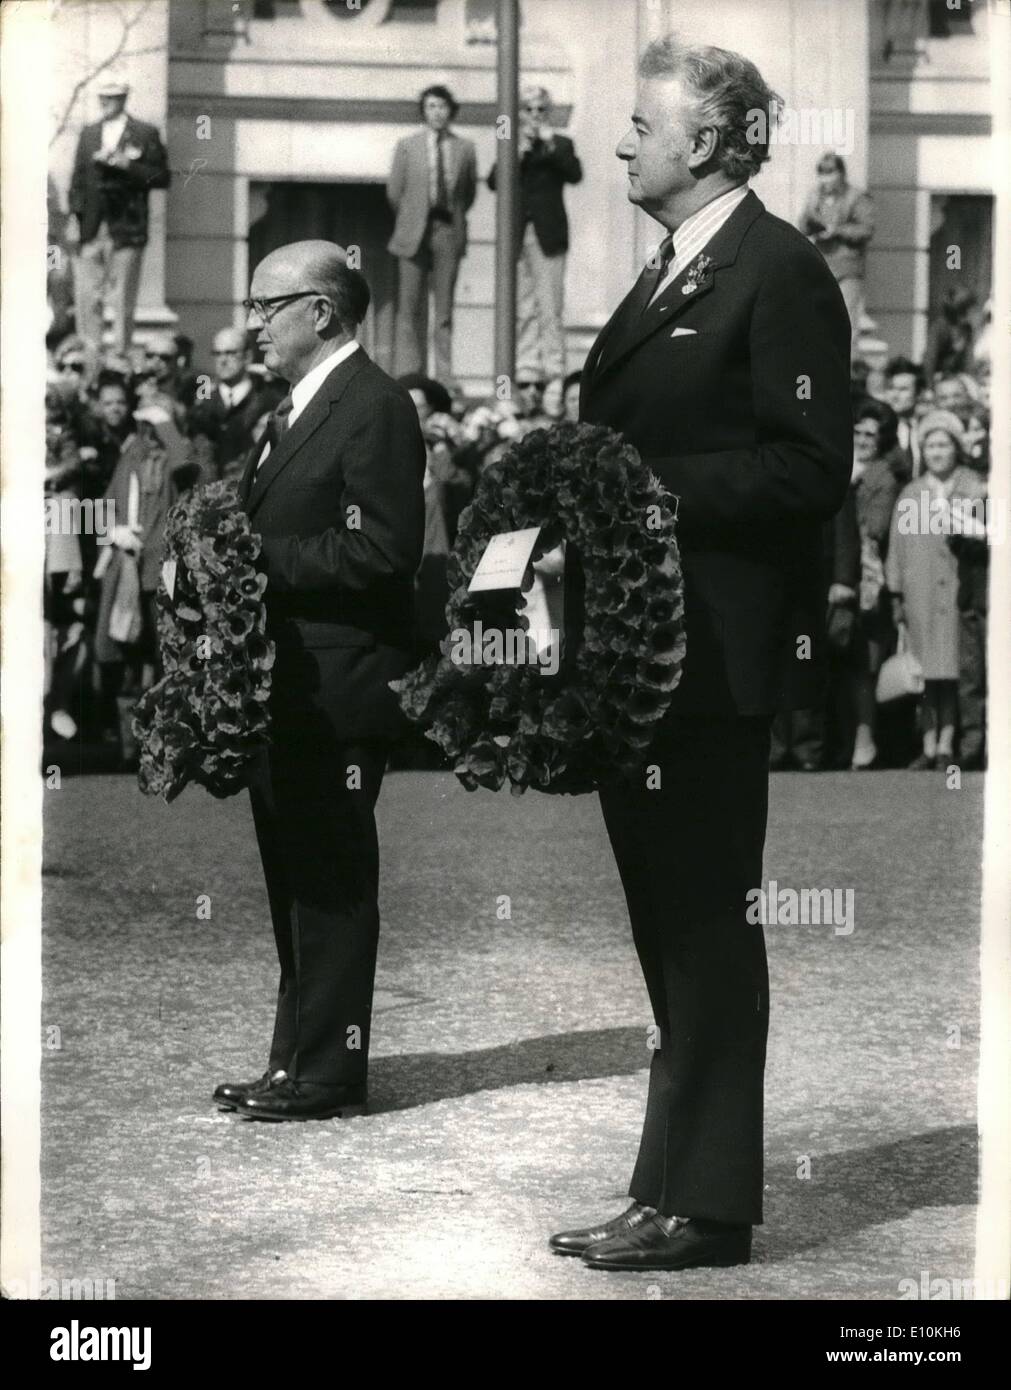 Avril 04, 1973 Journée de l'Anzac - dépôt de gerbe au Monument commémoratif ; de Premier ministre britannique, Edward Heath, a assisté aujourd'hui à la cérémonie de l'Anzac Day au cénotaphe où il a déposé une couronne pour commémorer les soldats australiens et néo-zélandais et les femmes qui sont morts au cours des deux guerres mondiales. Photo montre M. Terence Henderson Mccombs, (à gauche) La Nouvelle-Zélande Haut commissaire à Londres, et M. Gough Whitlam, le Premier Ministre australien, qui est à Londres pour une visite, que l'on voit aujourd'hui, au cours de service au Cénotaphe. Banque D'Images